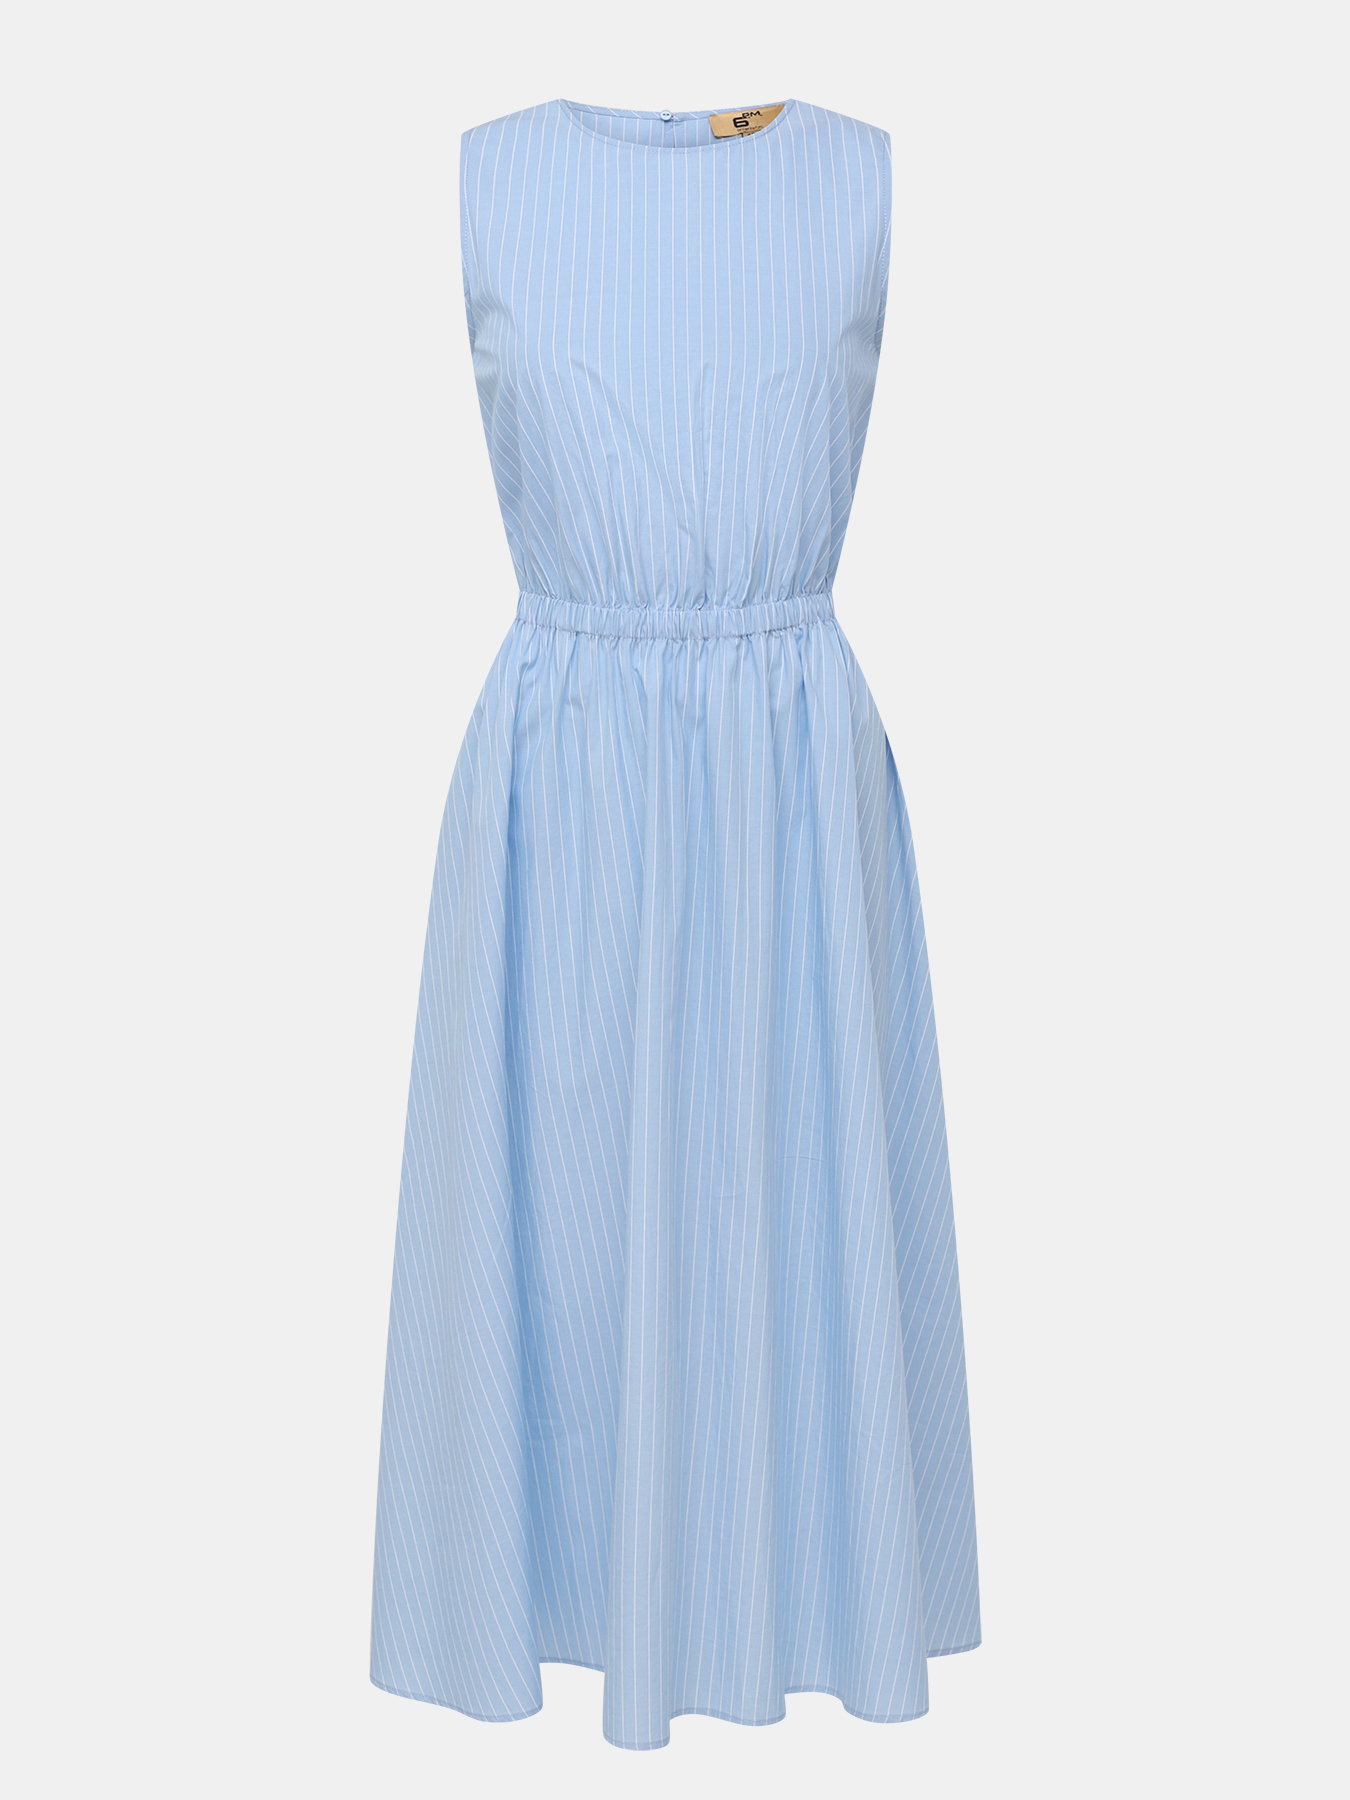 Платье женское 6 P.M. 447901 голубое 40 RU